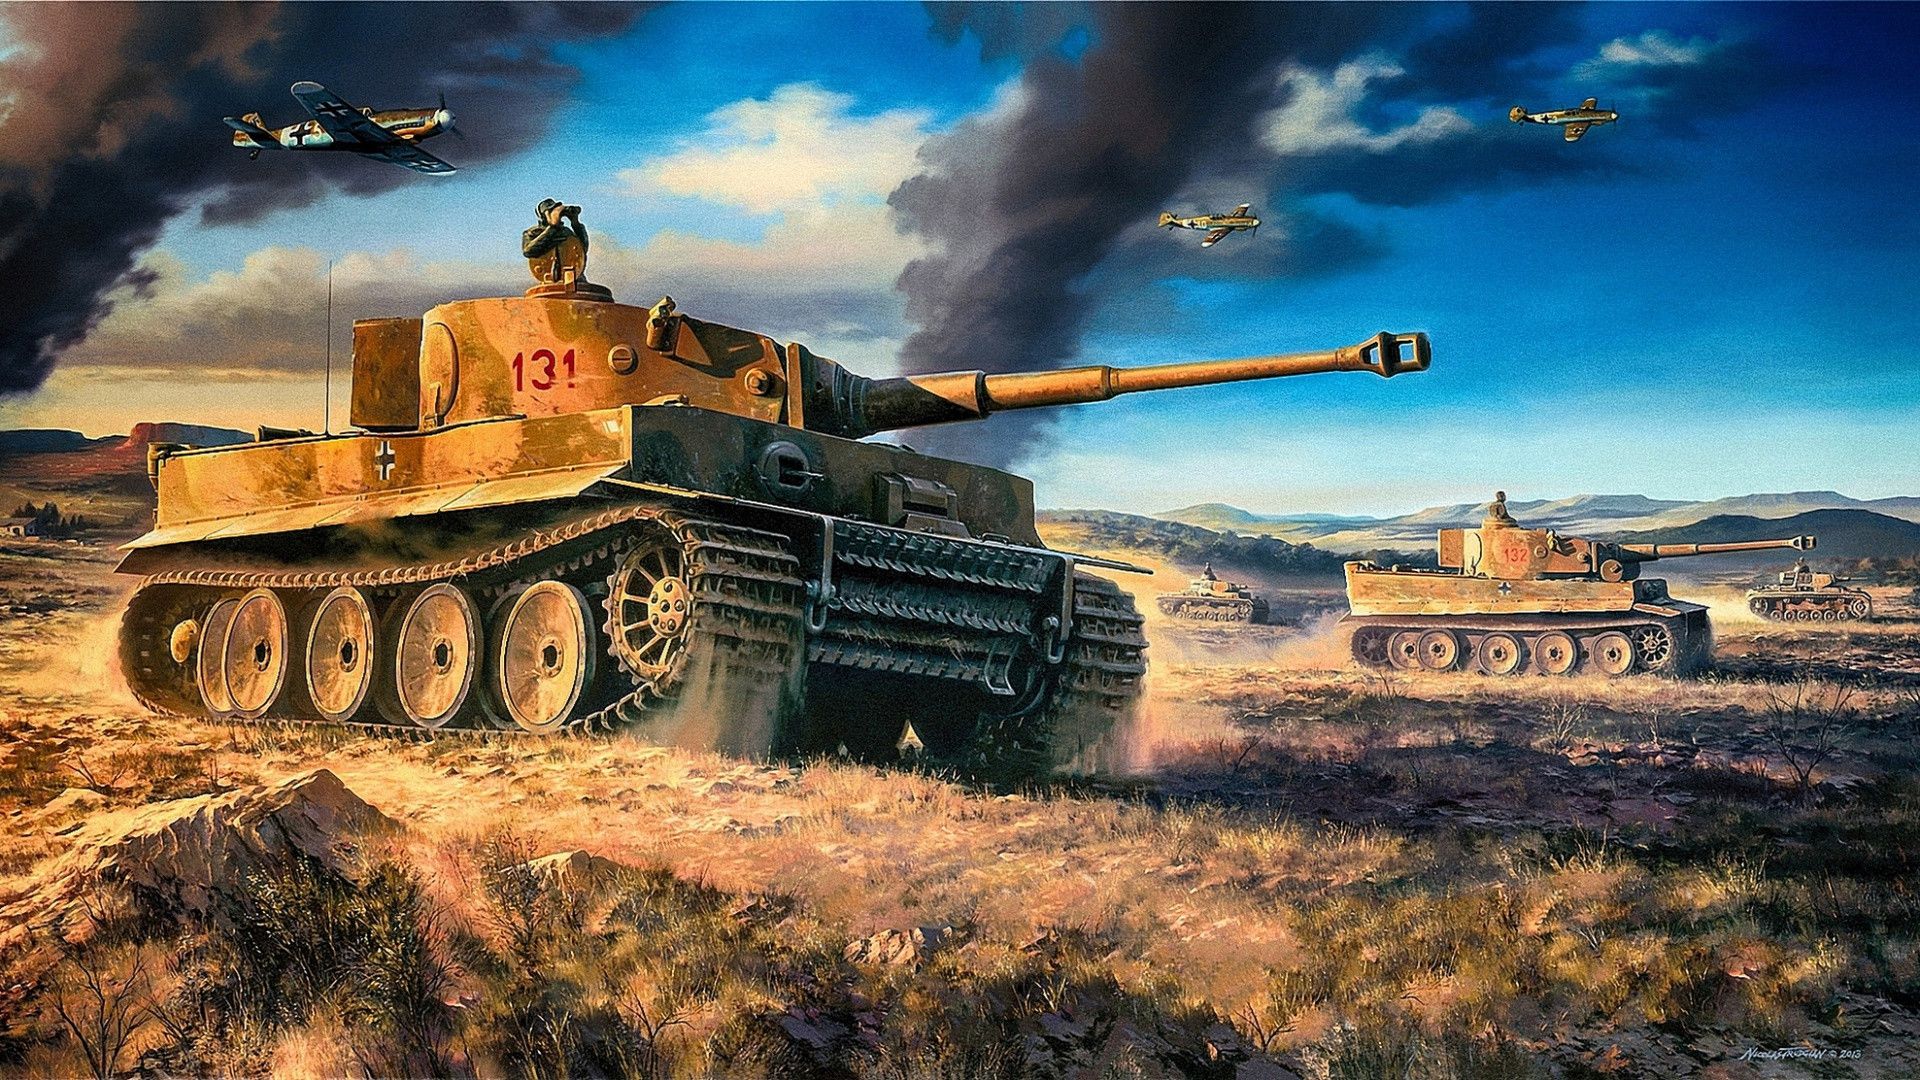 Tiger Tank Wallpaper - WallpaperSafari